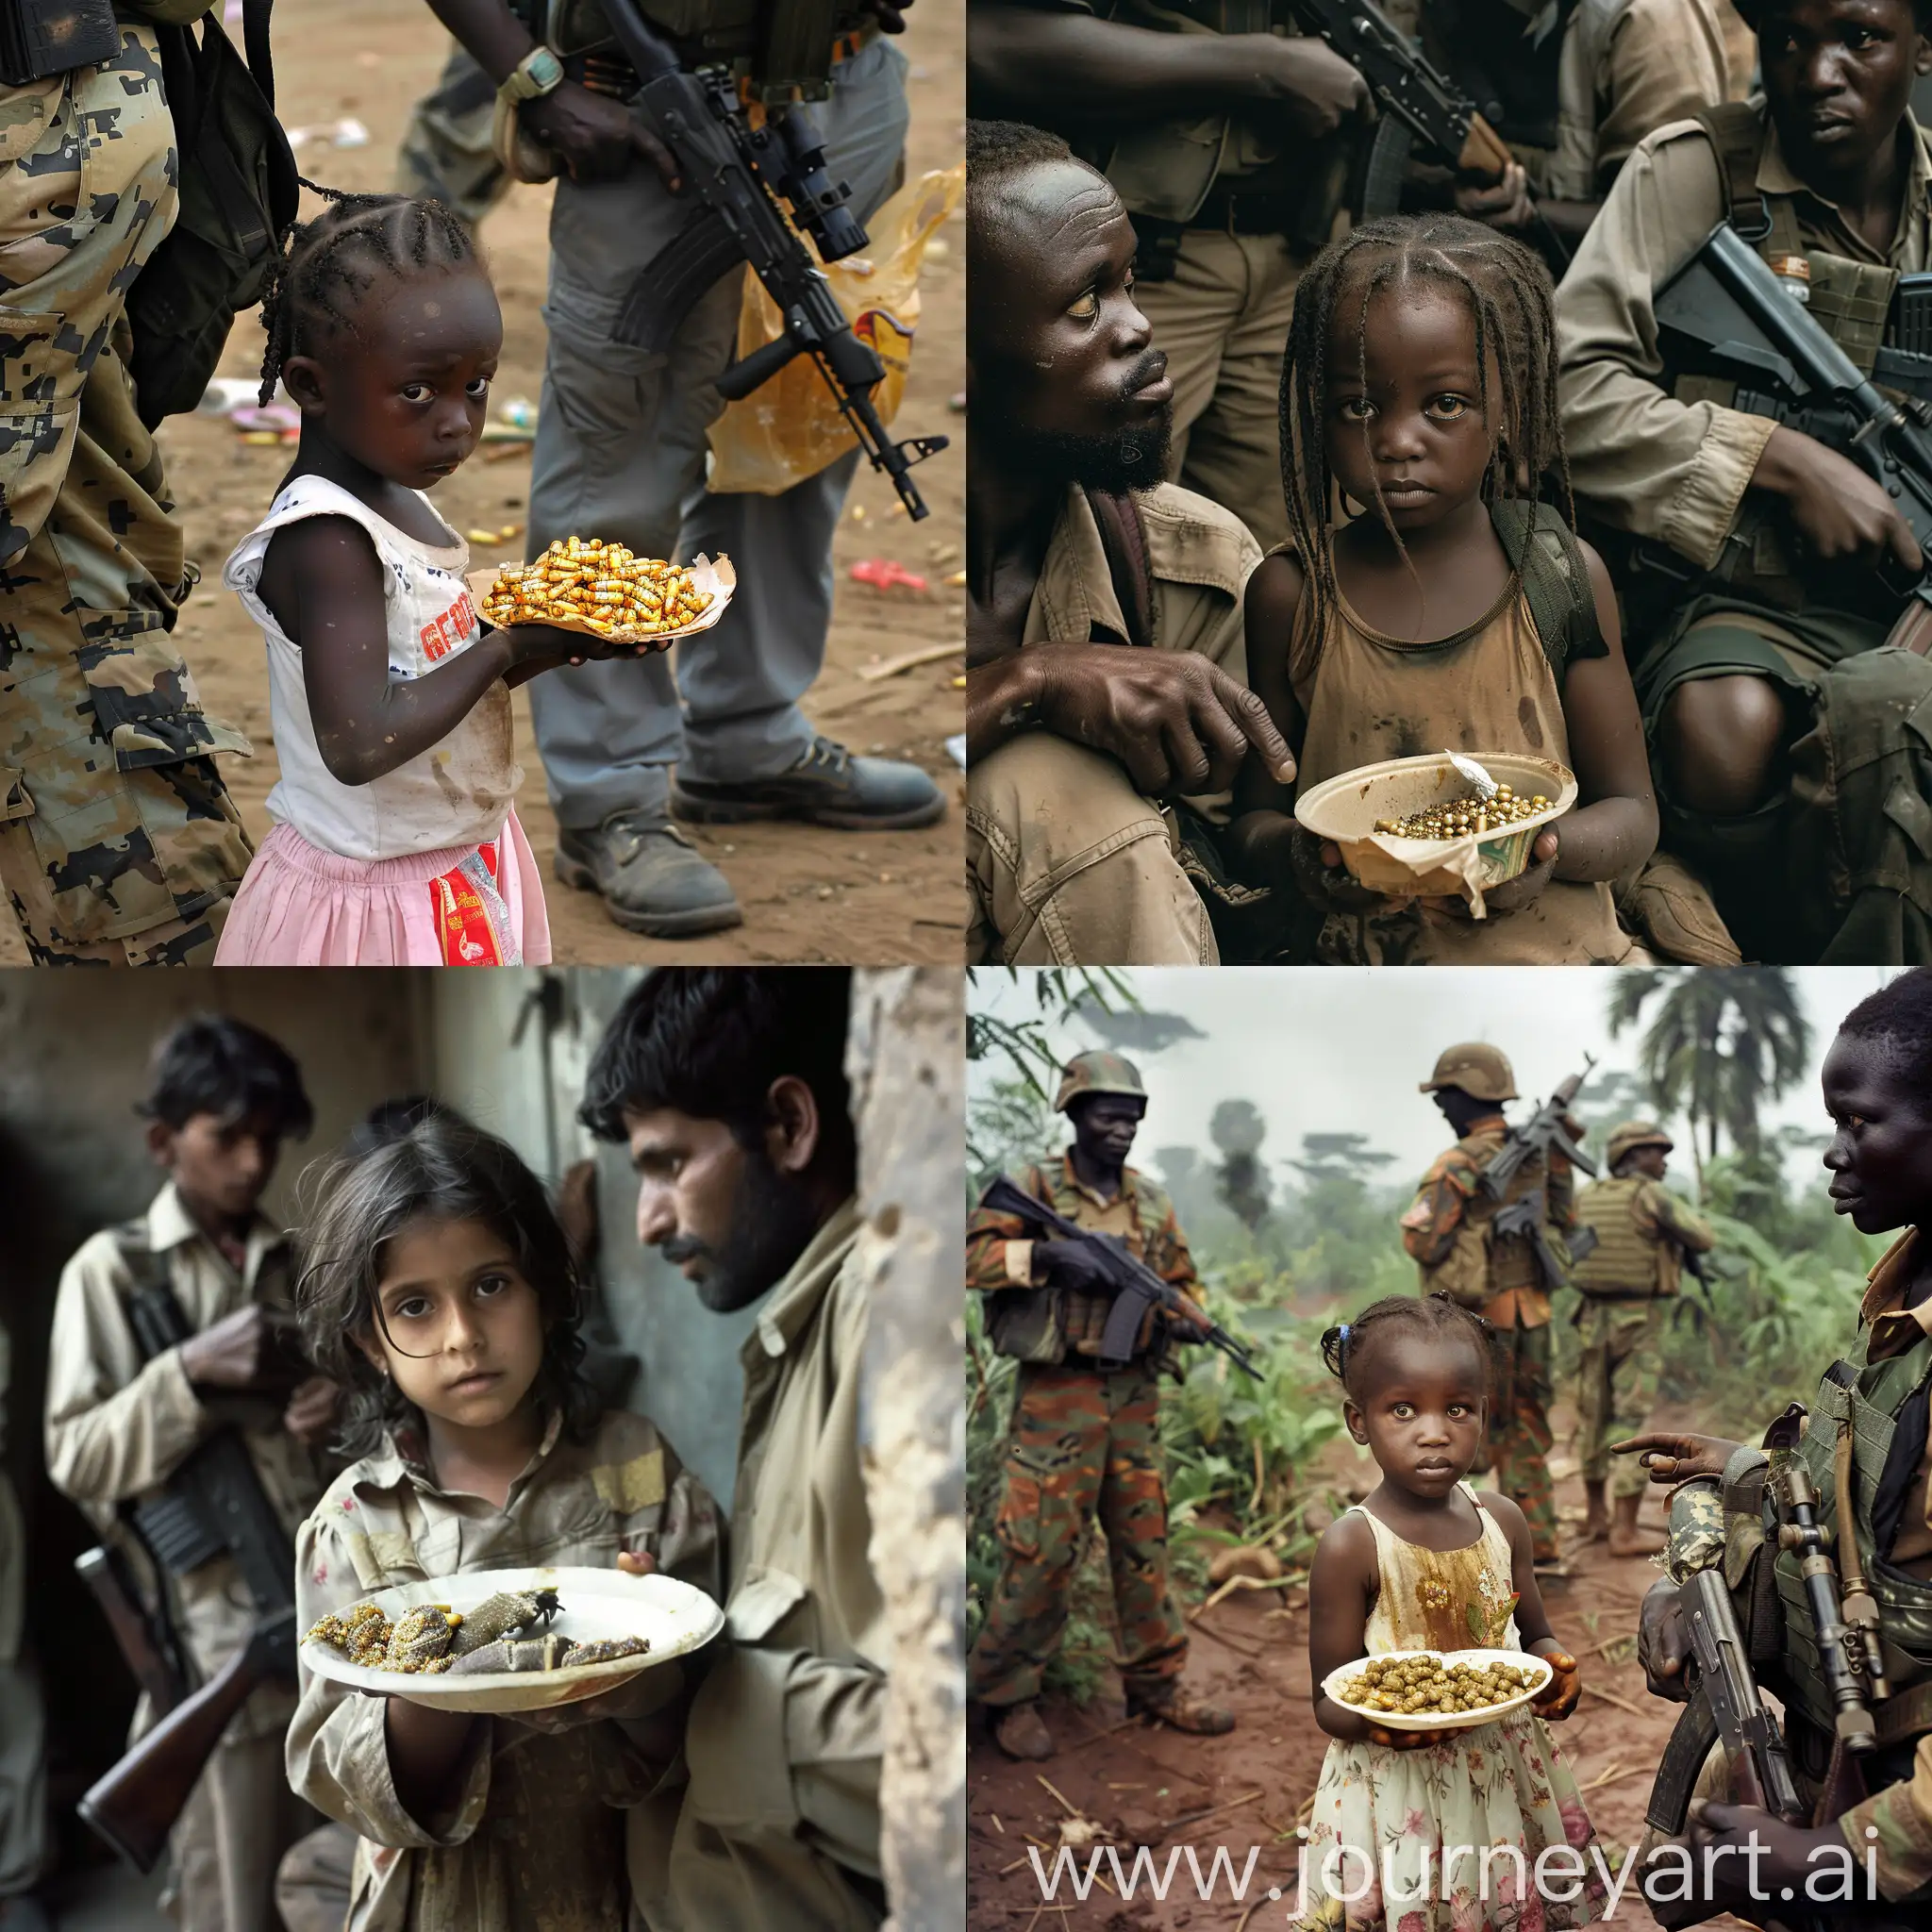 Brave-Girl-Defies-Gunmen-to-Secure-Food